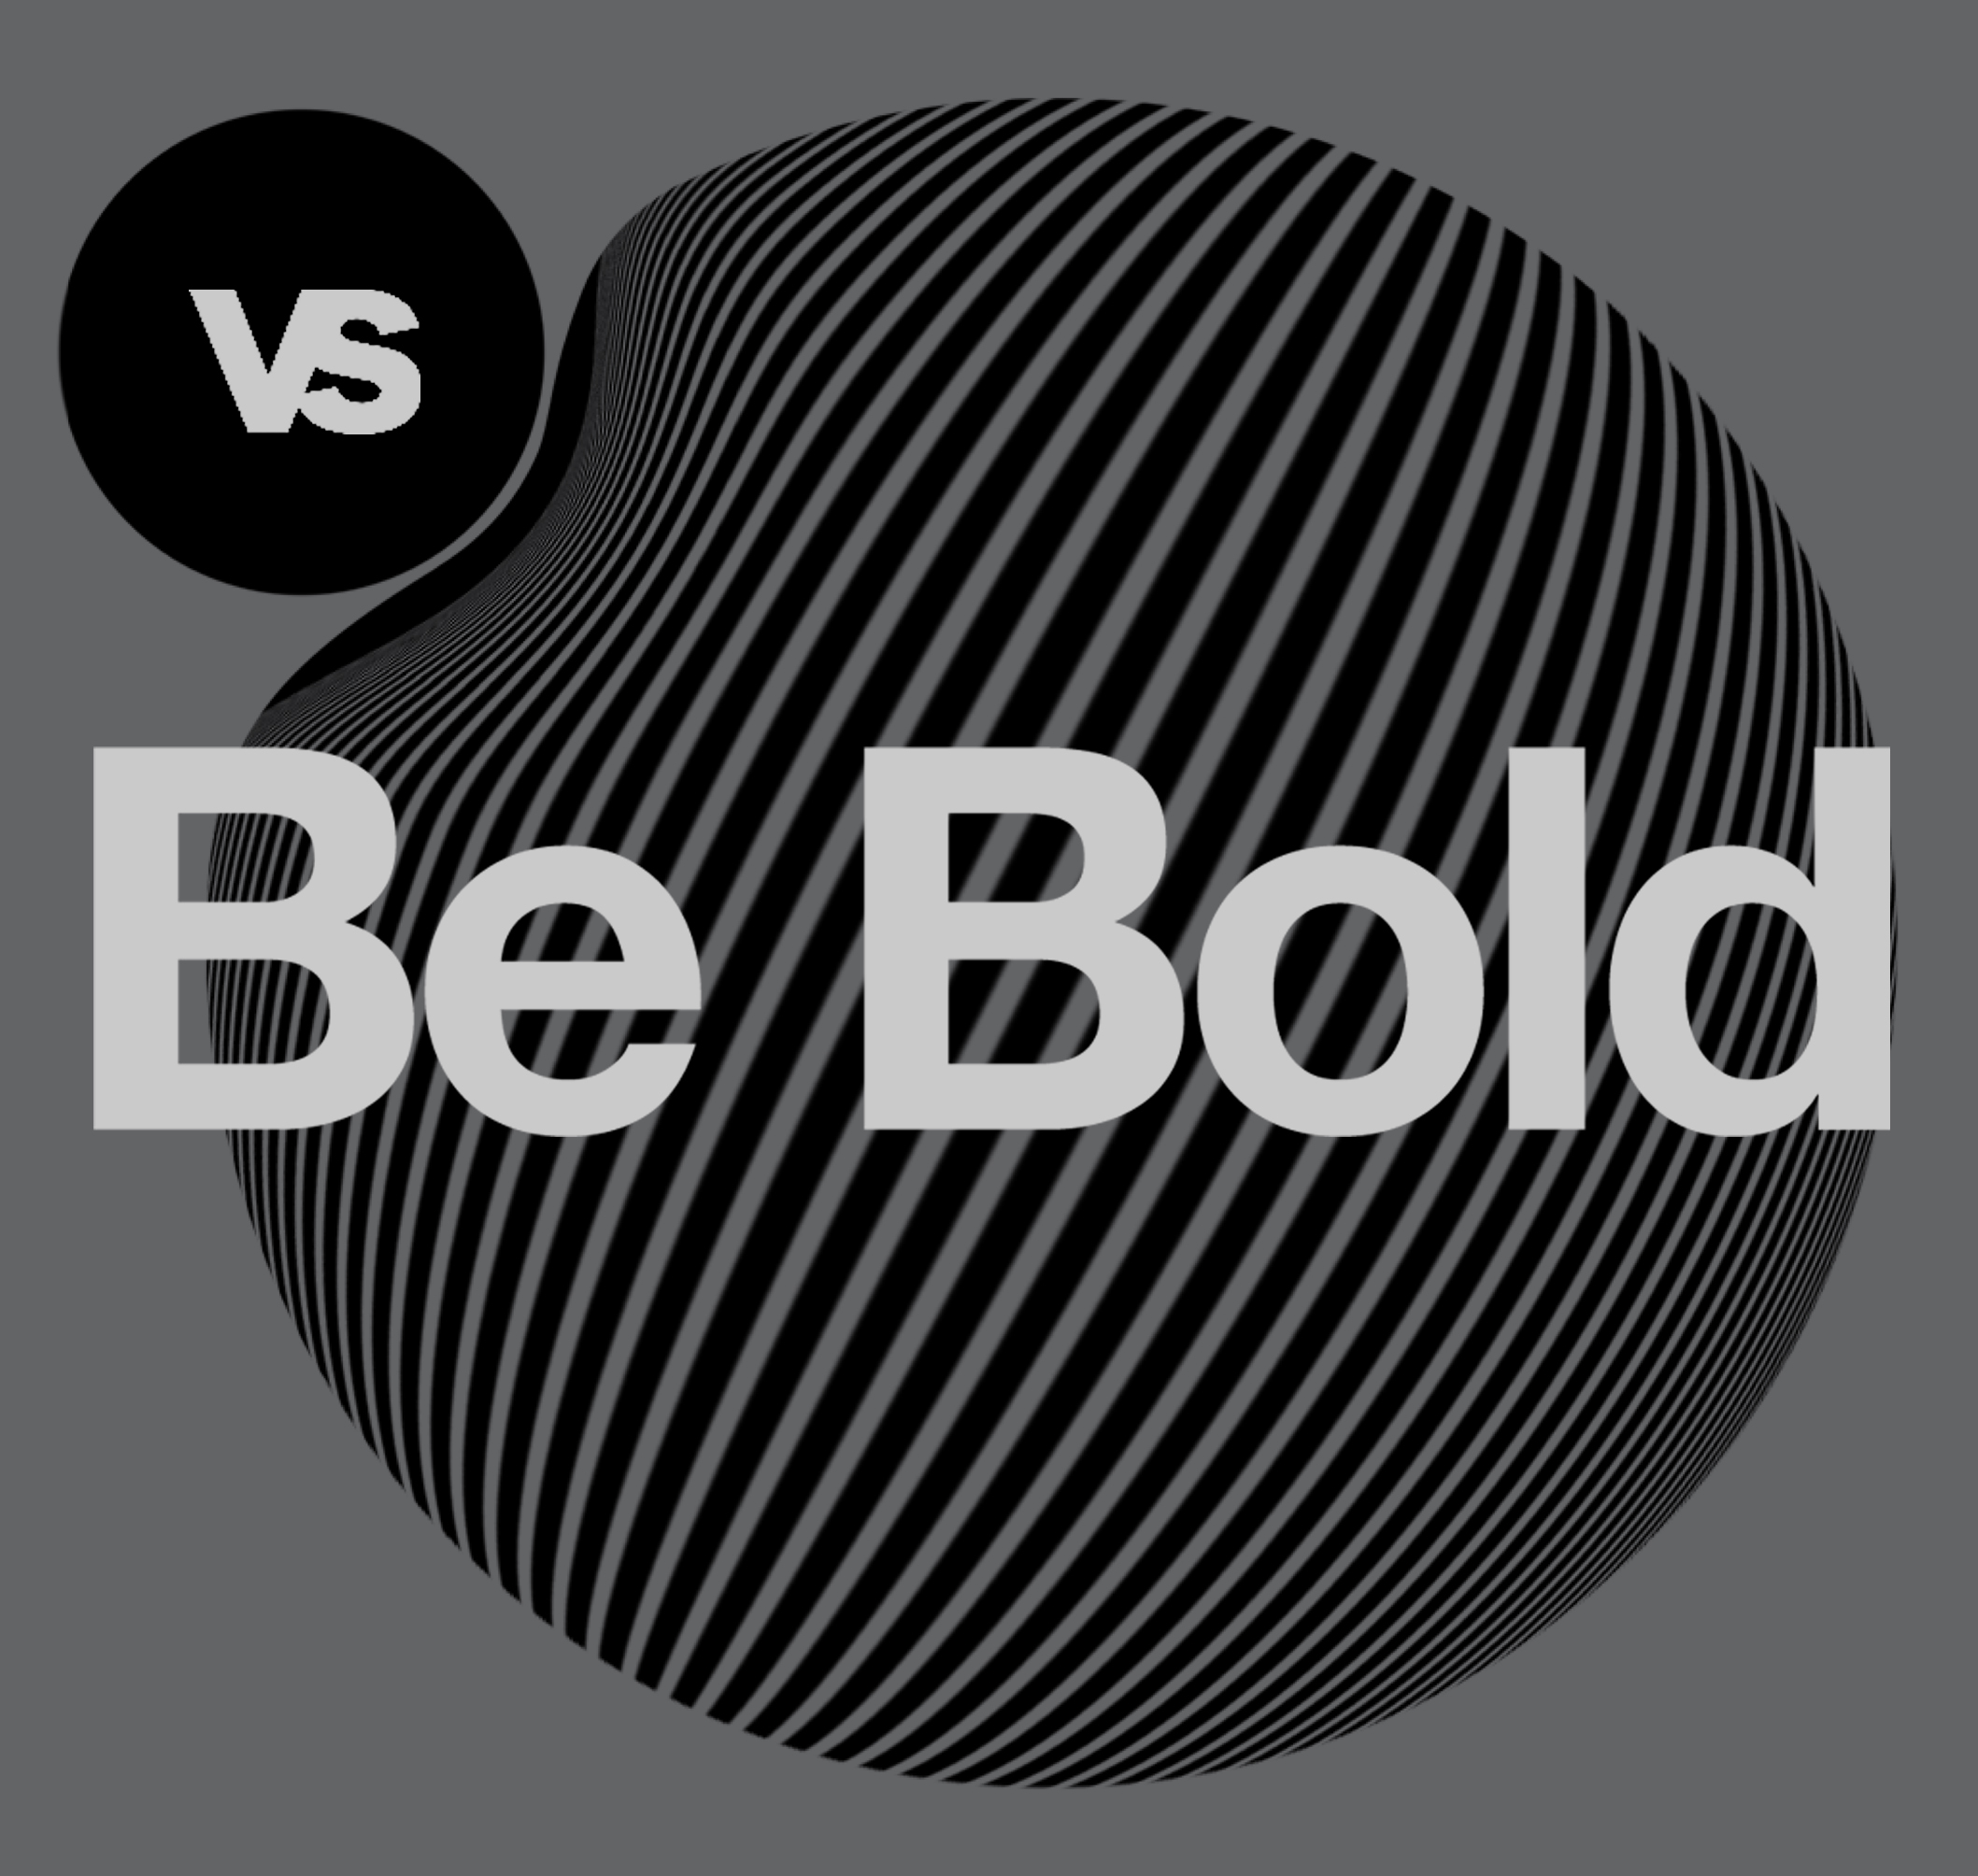 Versus Design - Be Bold